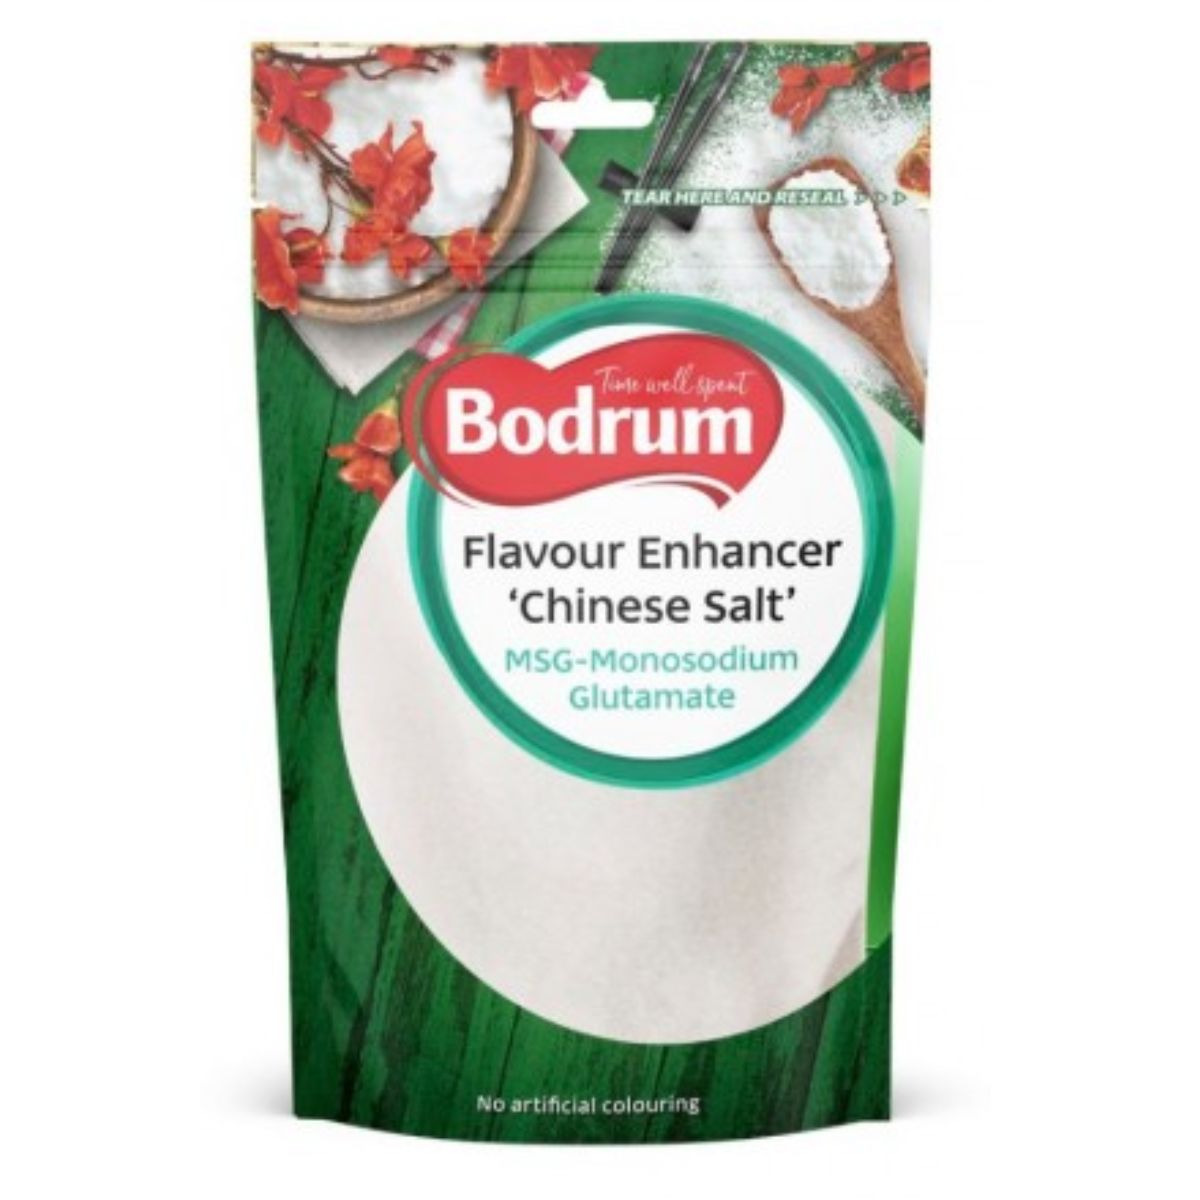 Bodrum - Chinese Salt - 100g flavour enhancer.